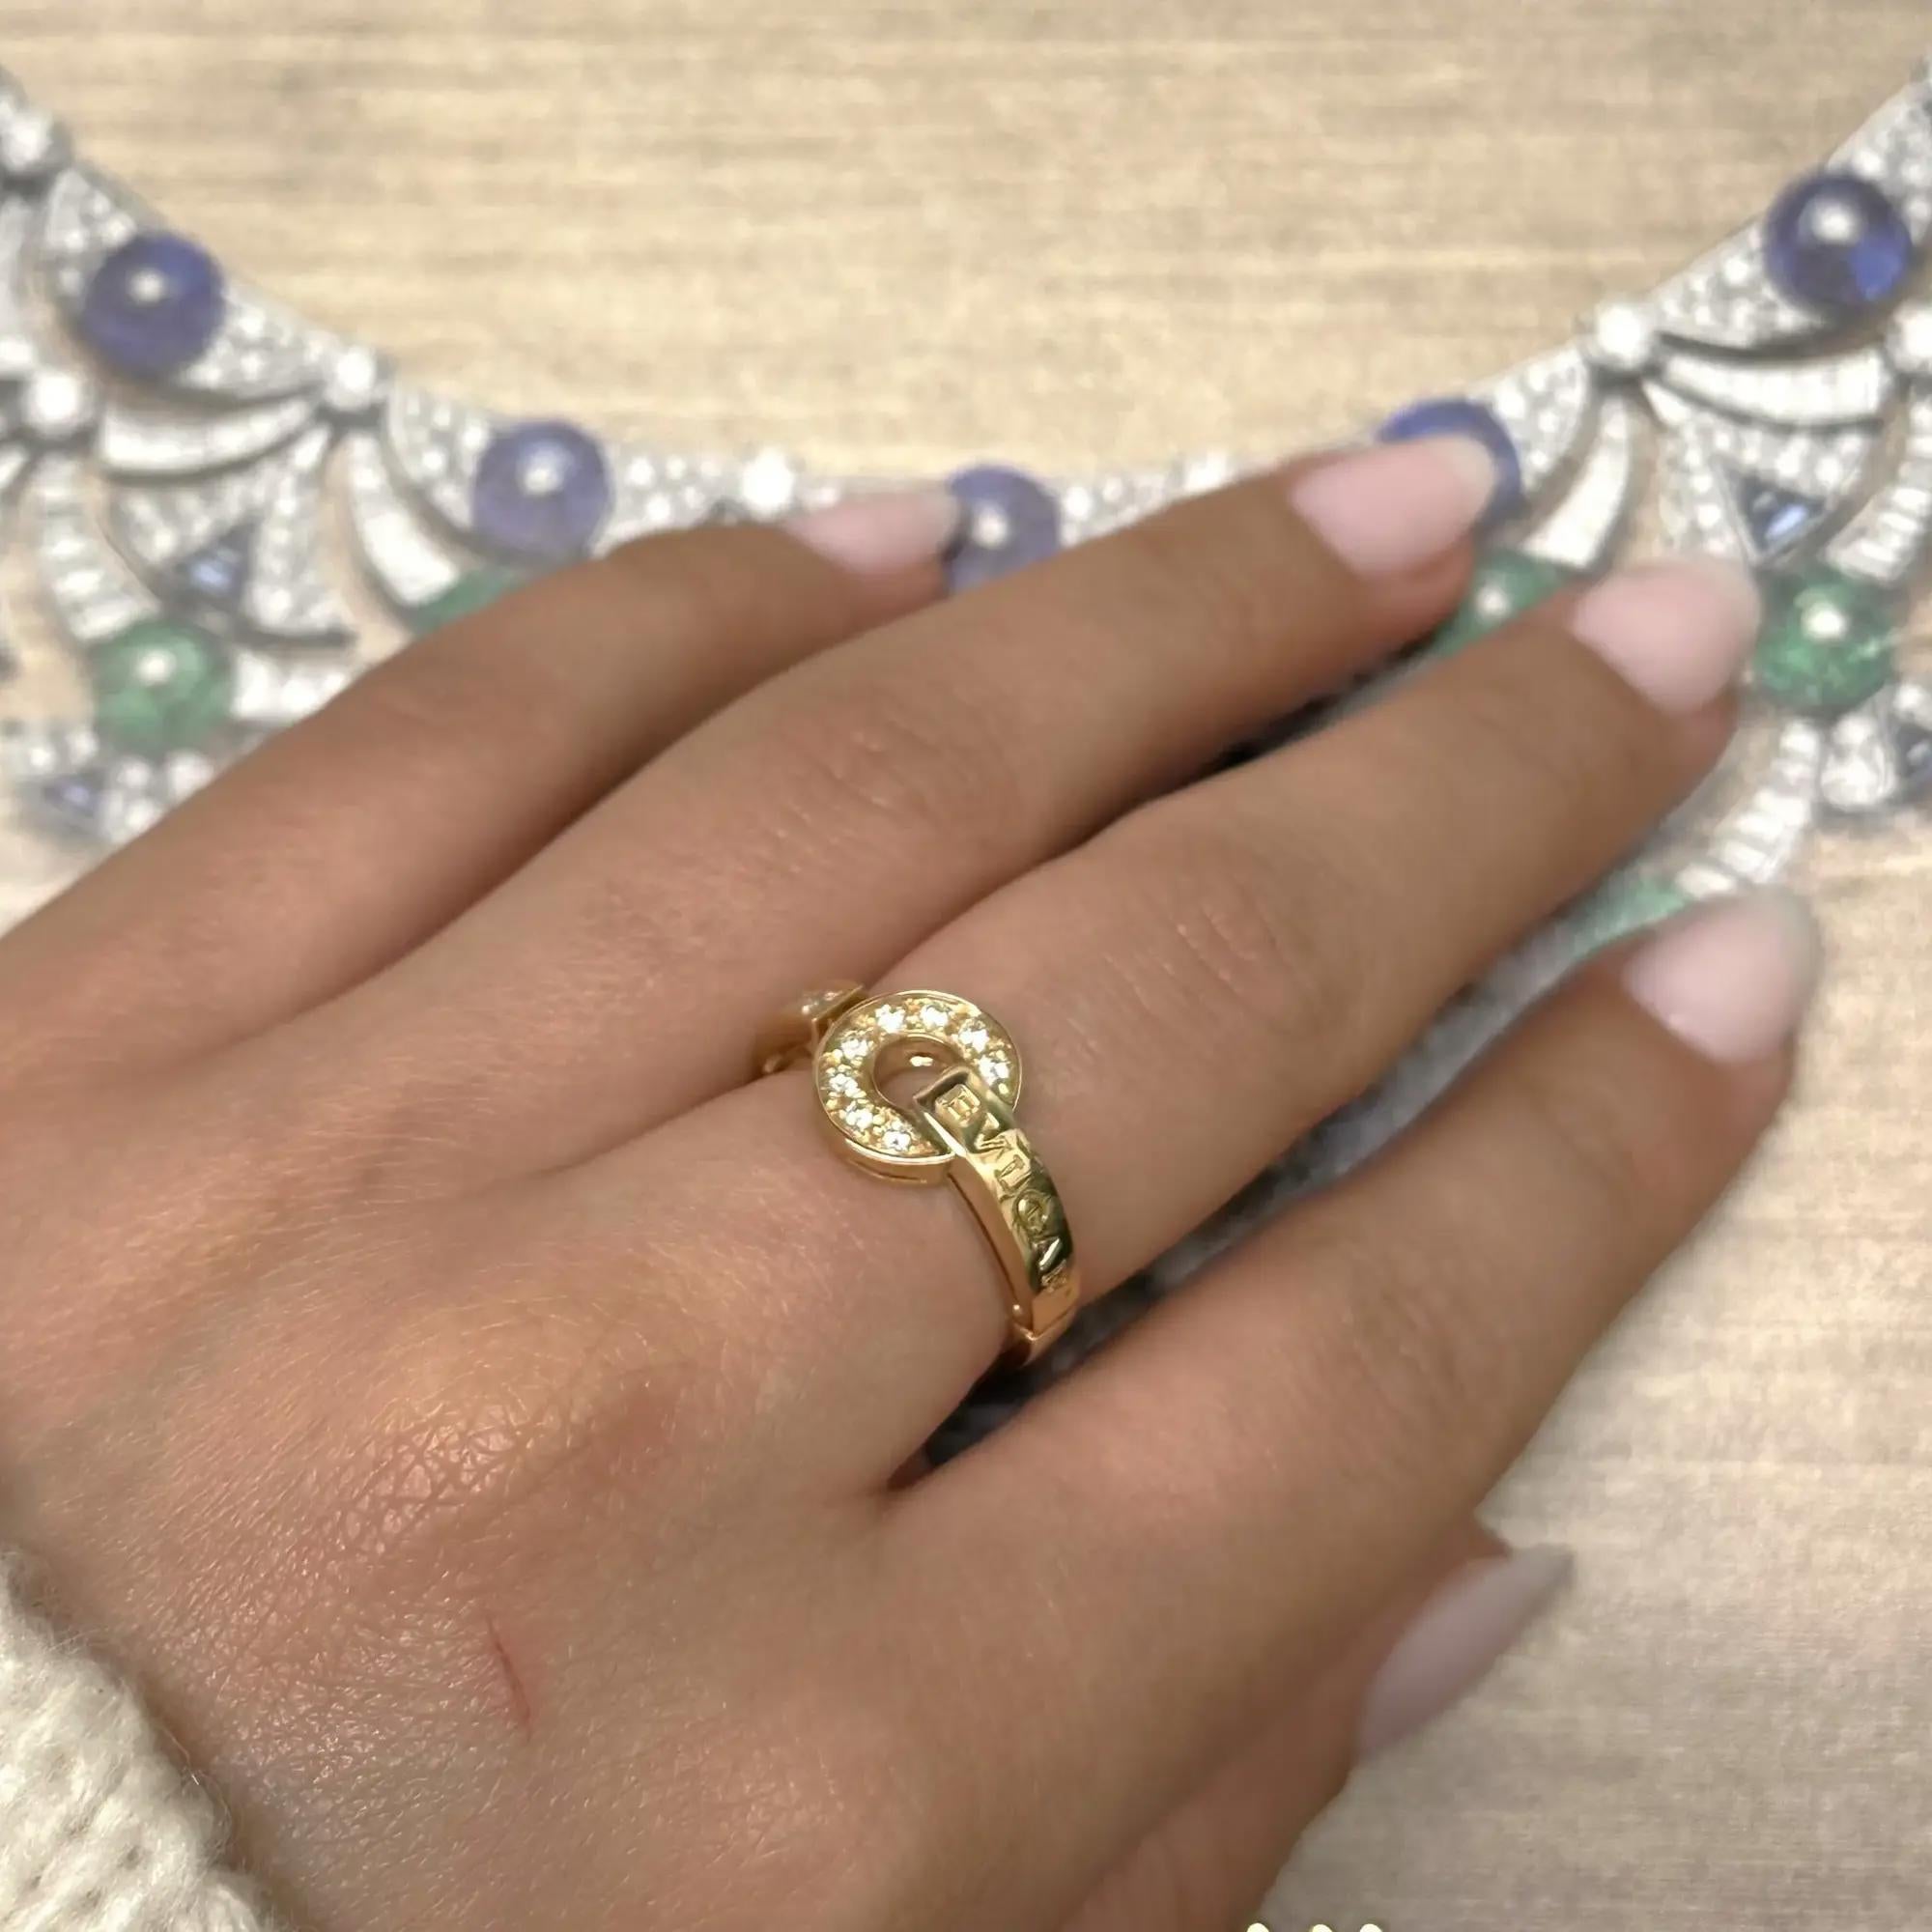 Round Cut Bvlgari Bvlgari Diamond Ring 18K Rose Gold Size 53 US 6.5 For Sale